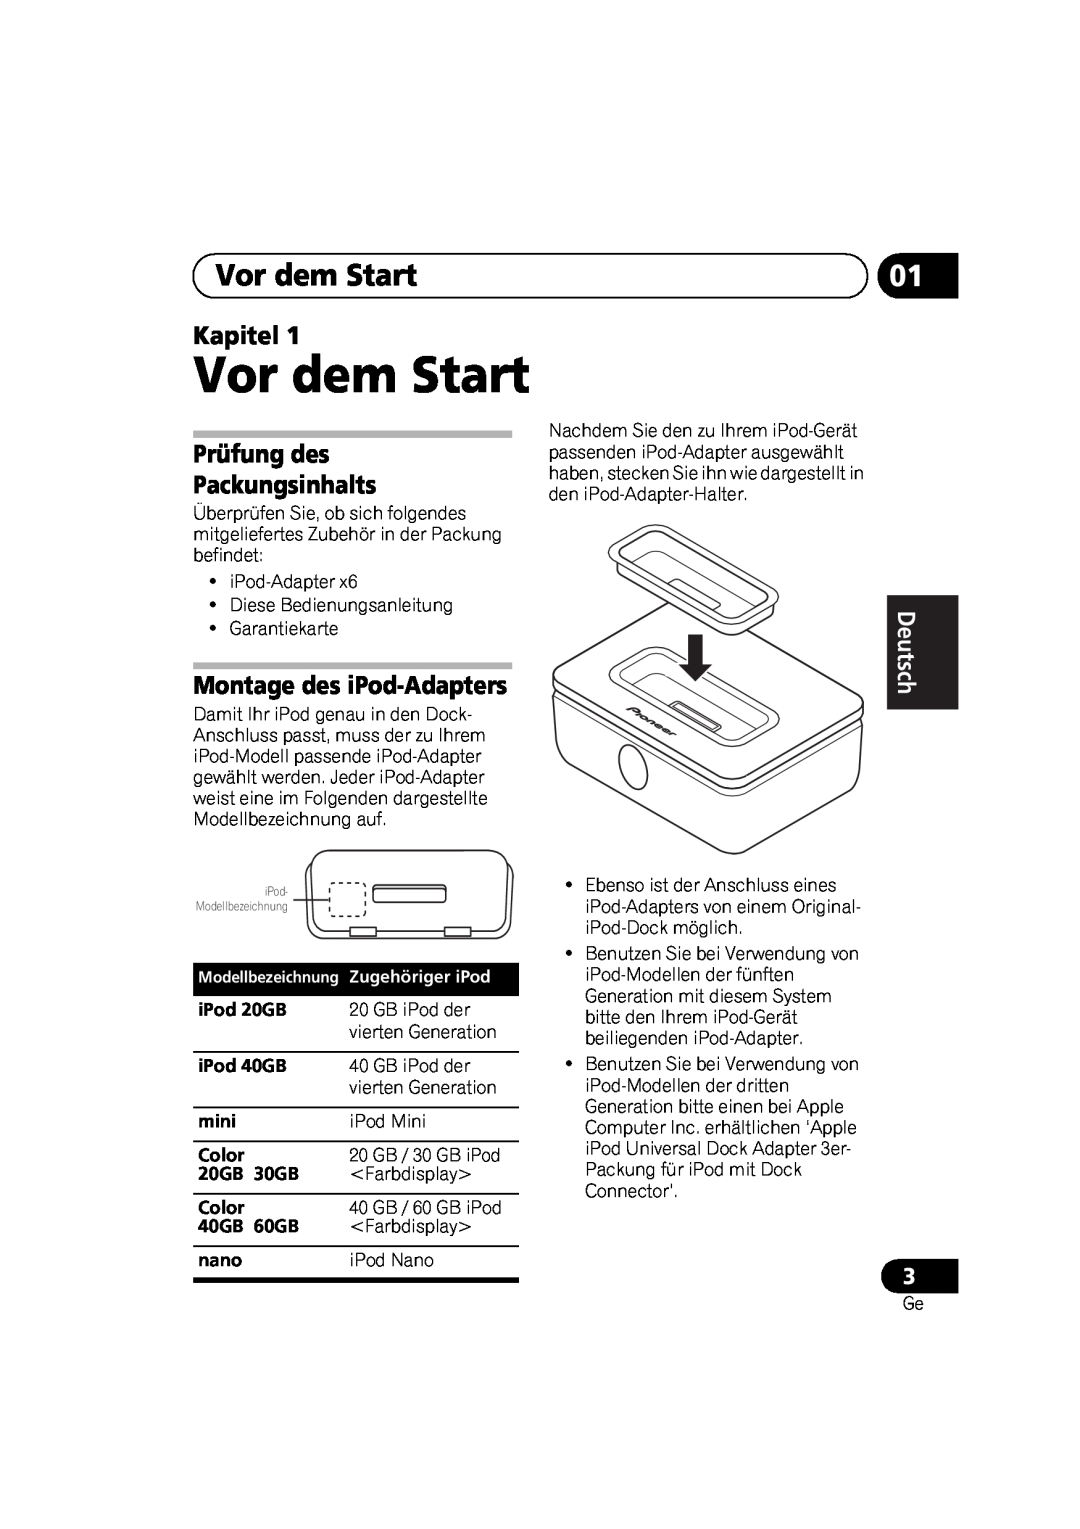 Pioneer IDK-80 Vor dem Start, Kapitel, Prüfung des Packungsinhalts, Montage des iPod-Adapters, English Français Deutsch 